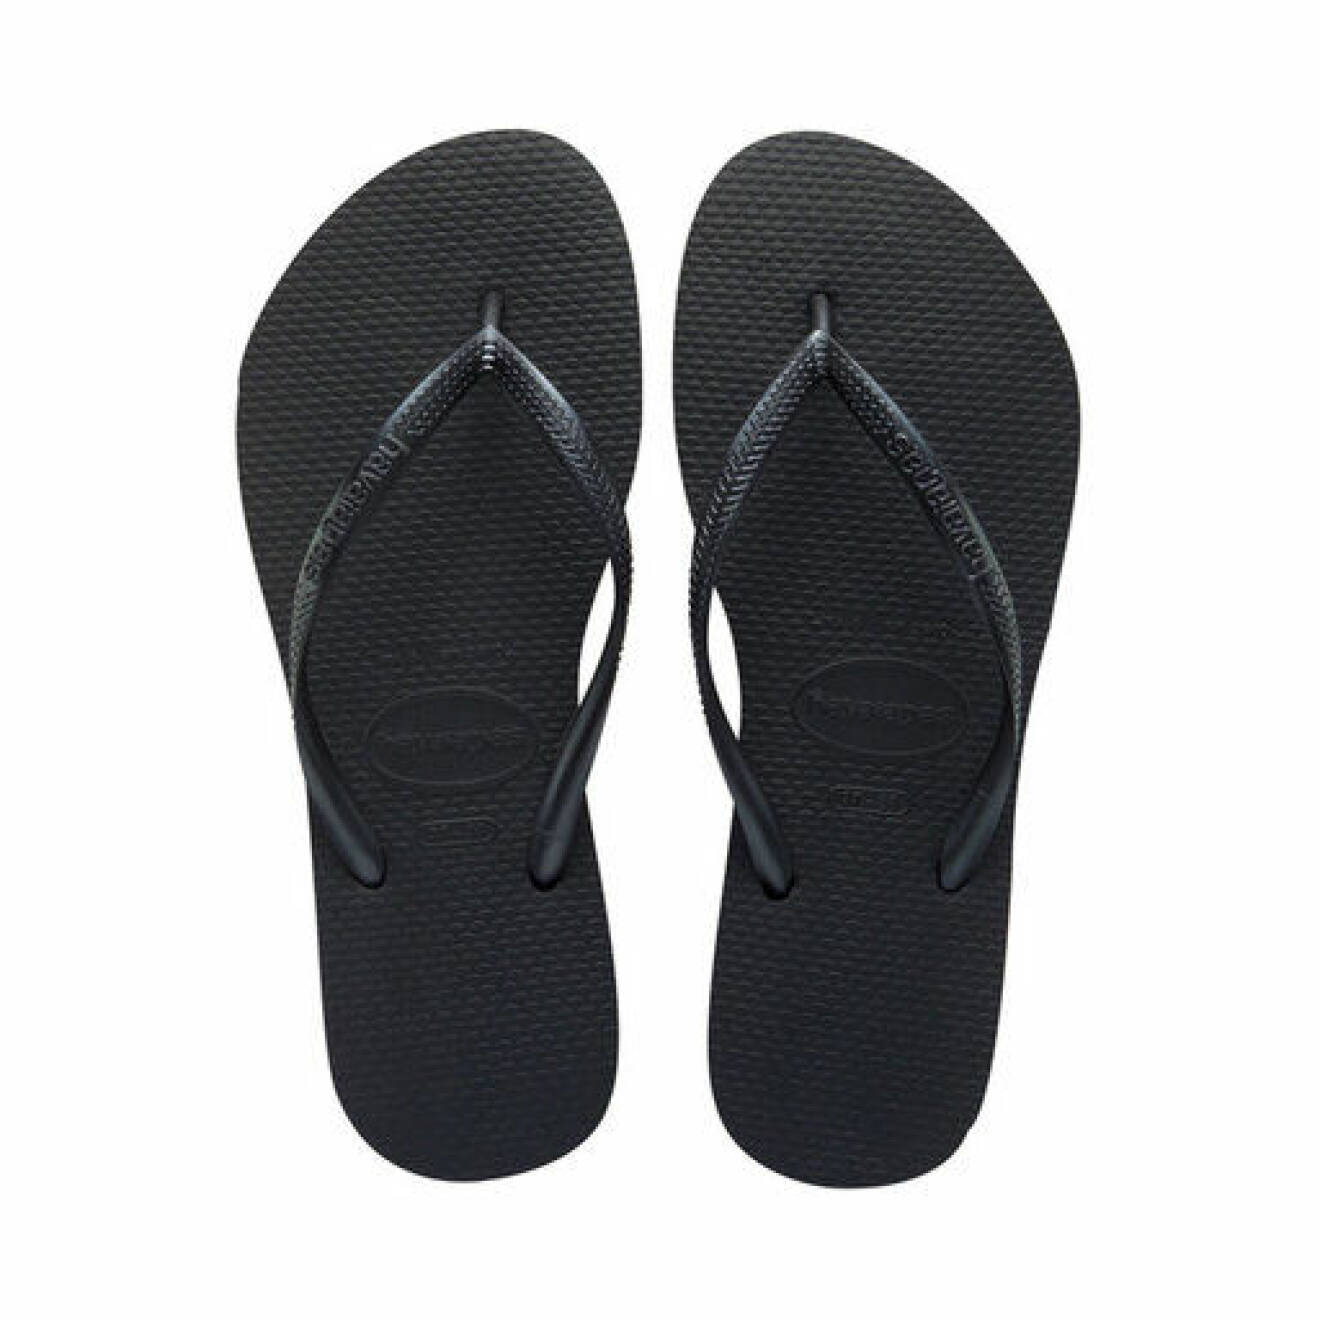 Svarta flip-flops. Sandaler från Havaianas.